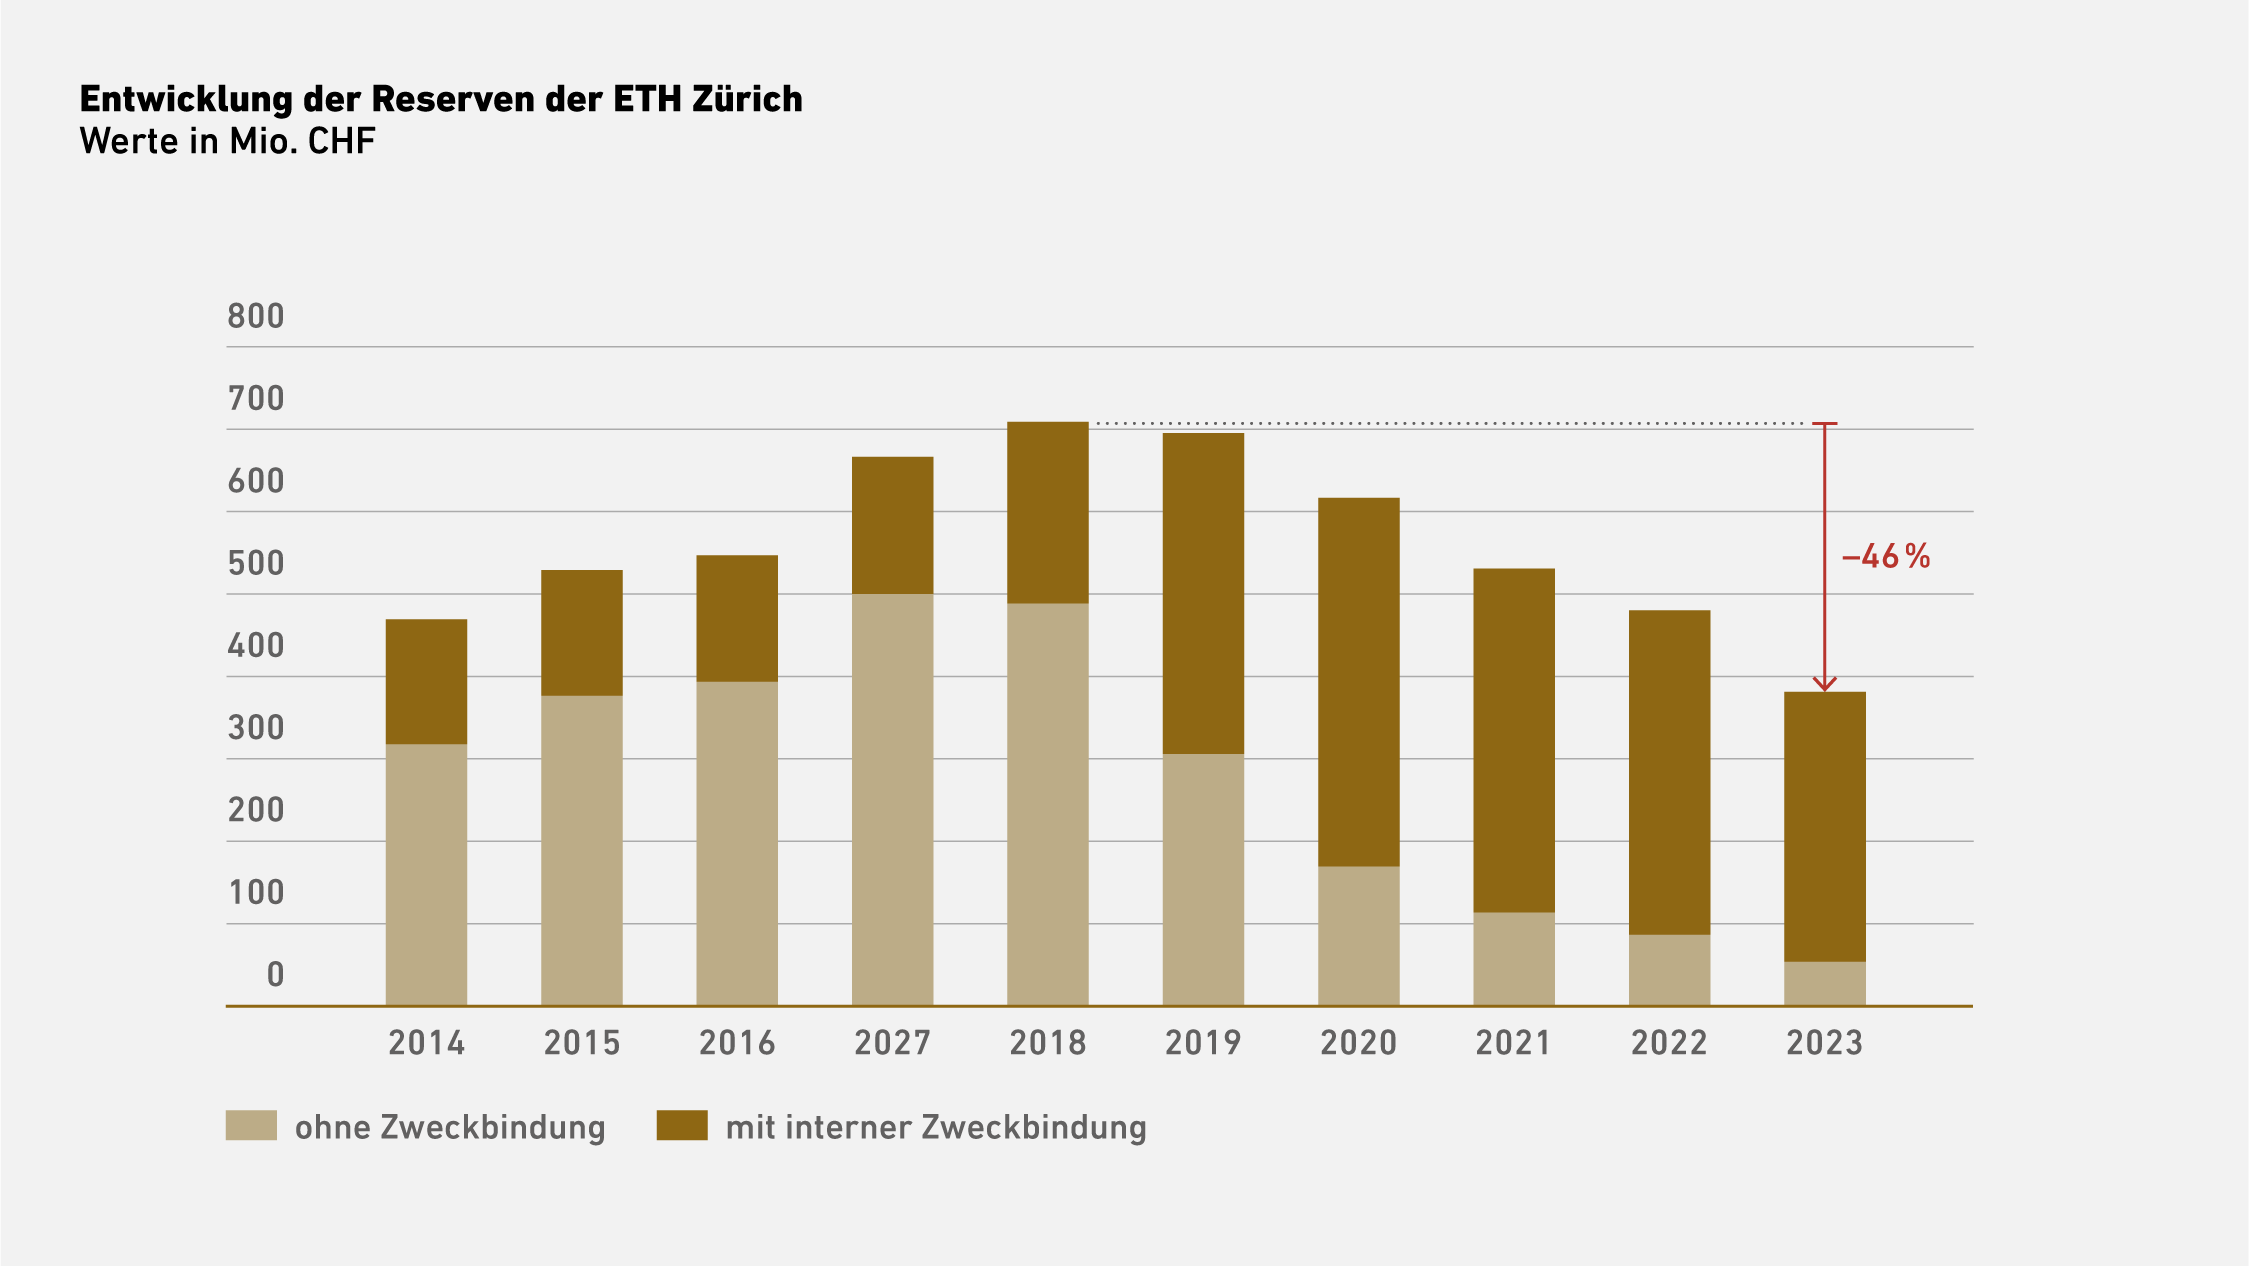 Vergrösserte Ansicht: Entwiclung der Reserven der ETH Zürich (Werte in Mio. CHF) aufgesplittet in ohne Zweckbindung und mit interner Zweckbindung